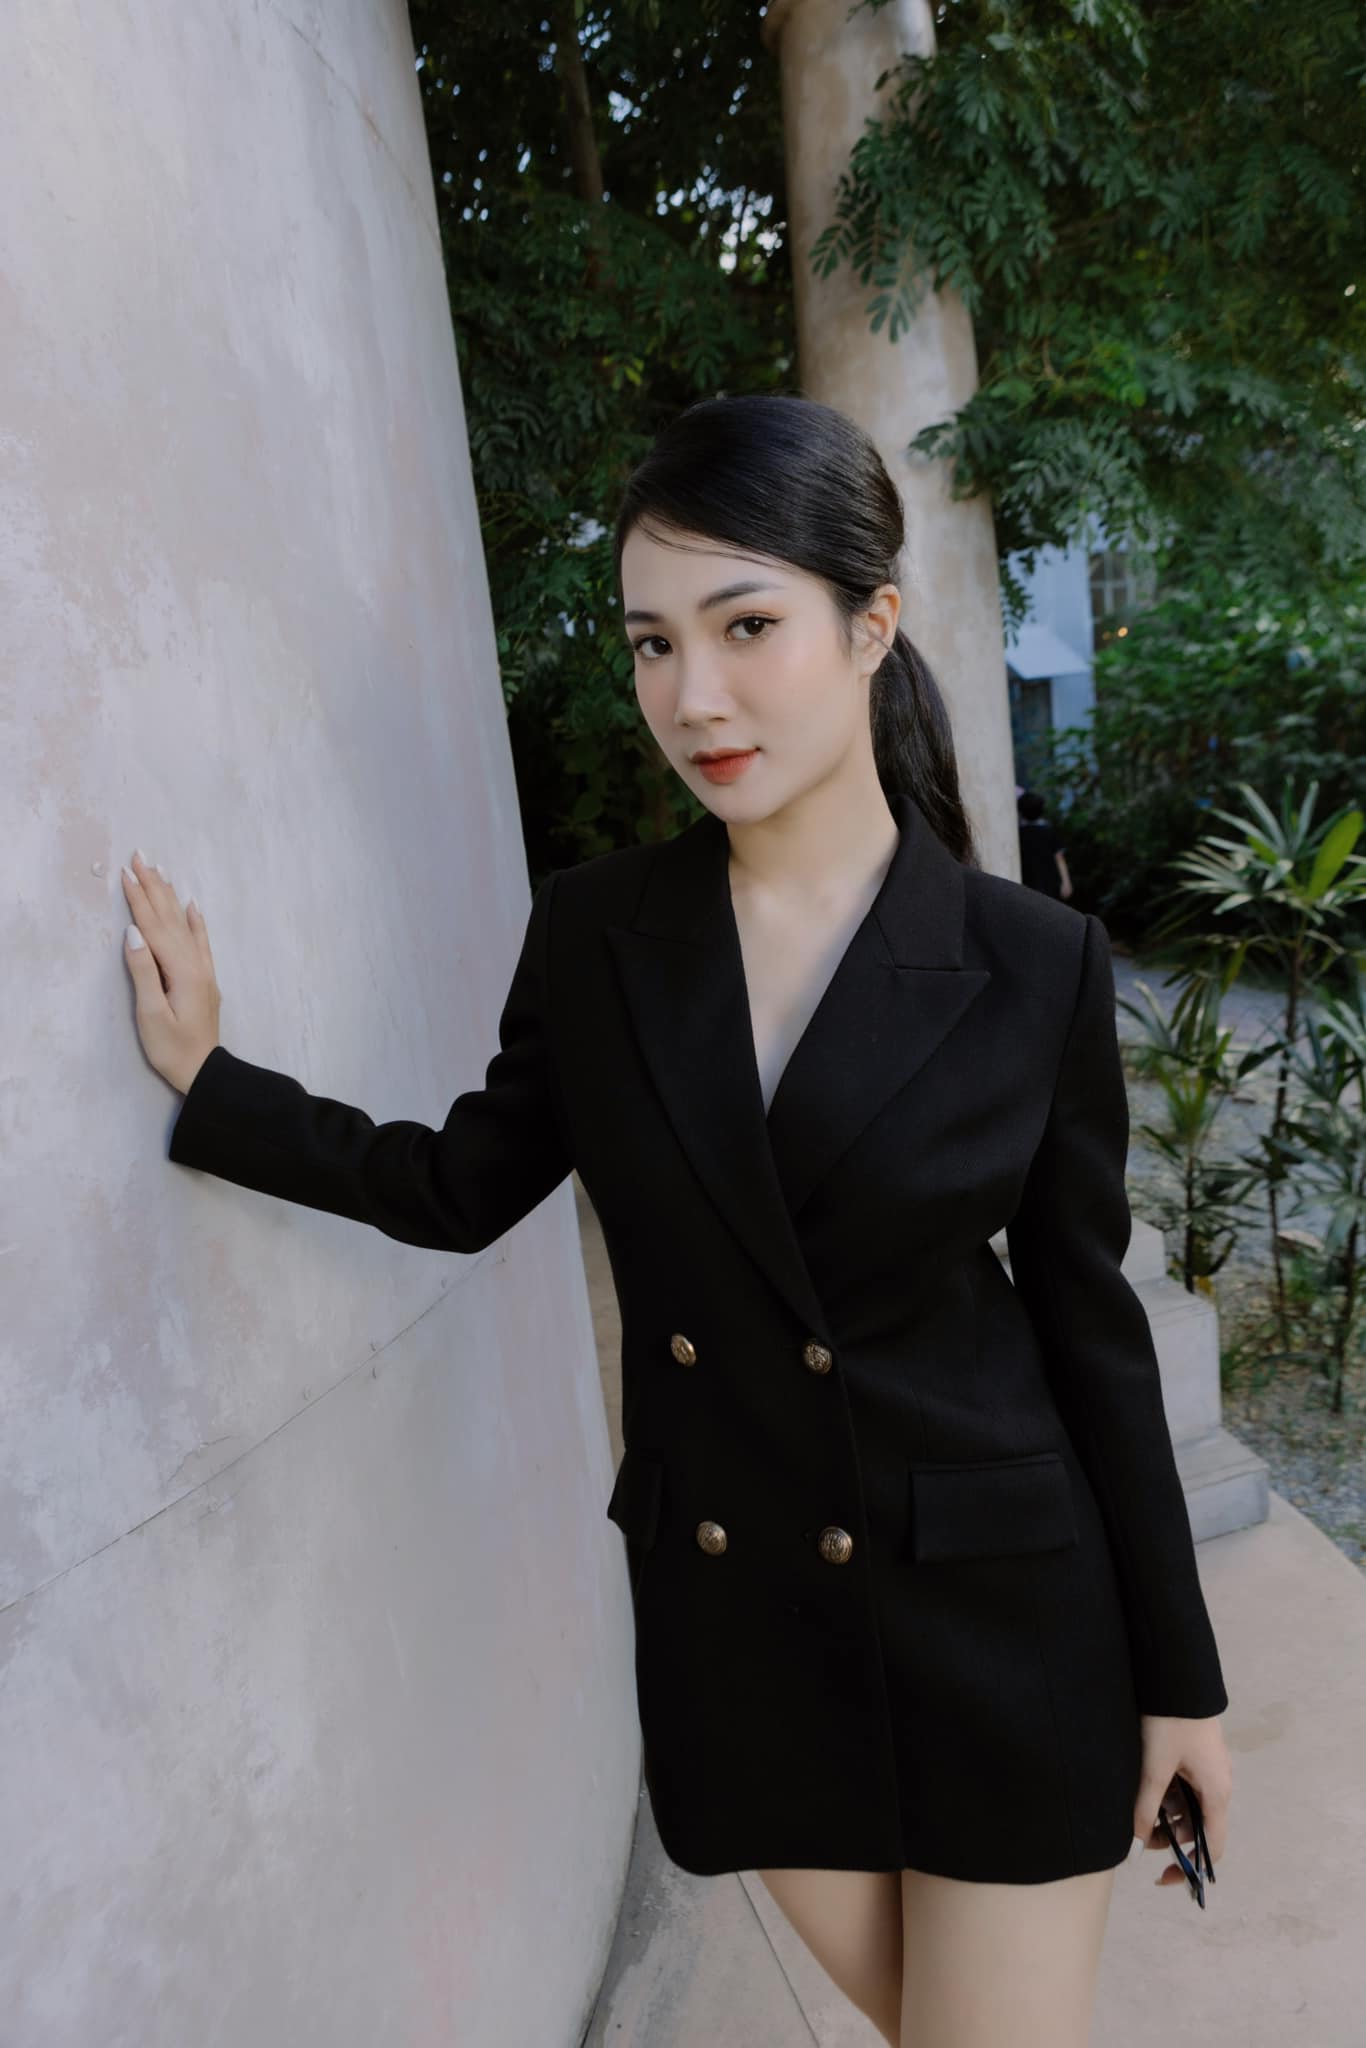 "Con gái đại gia nghìn tỷ phim Việt" dáng đẹp như người mẫu, chuộng mặc tôn hình thể - 6